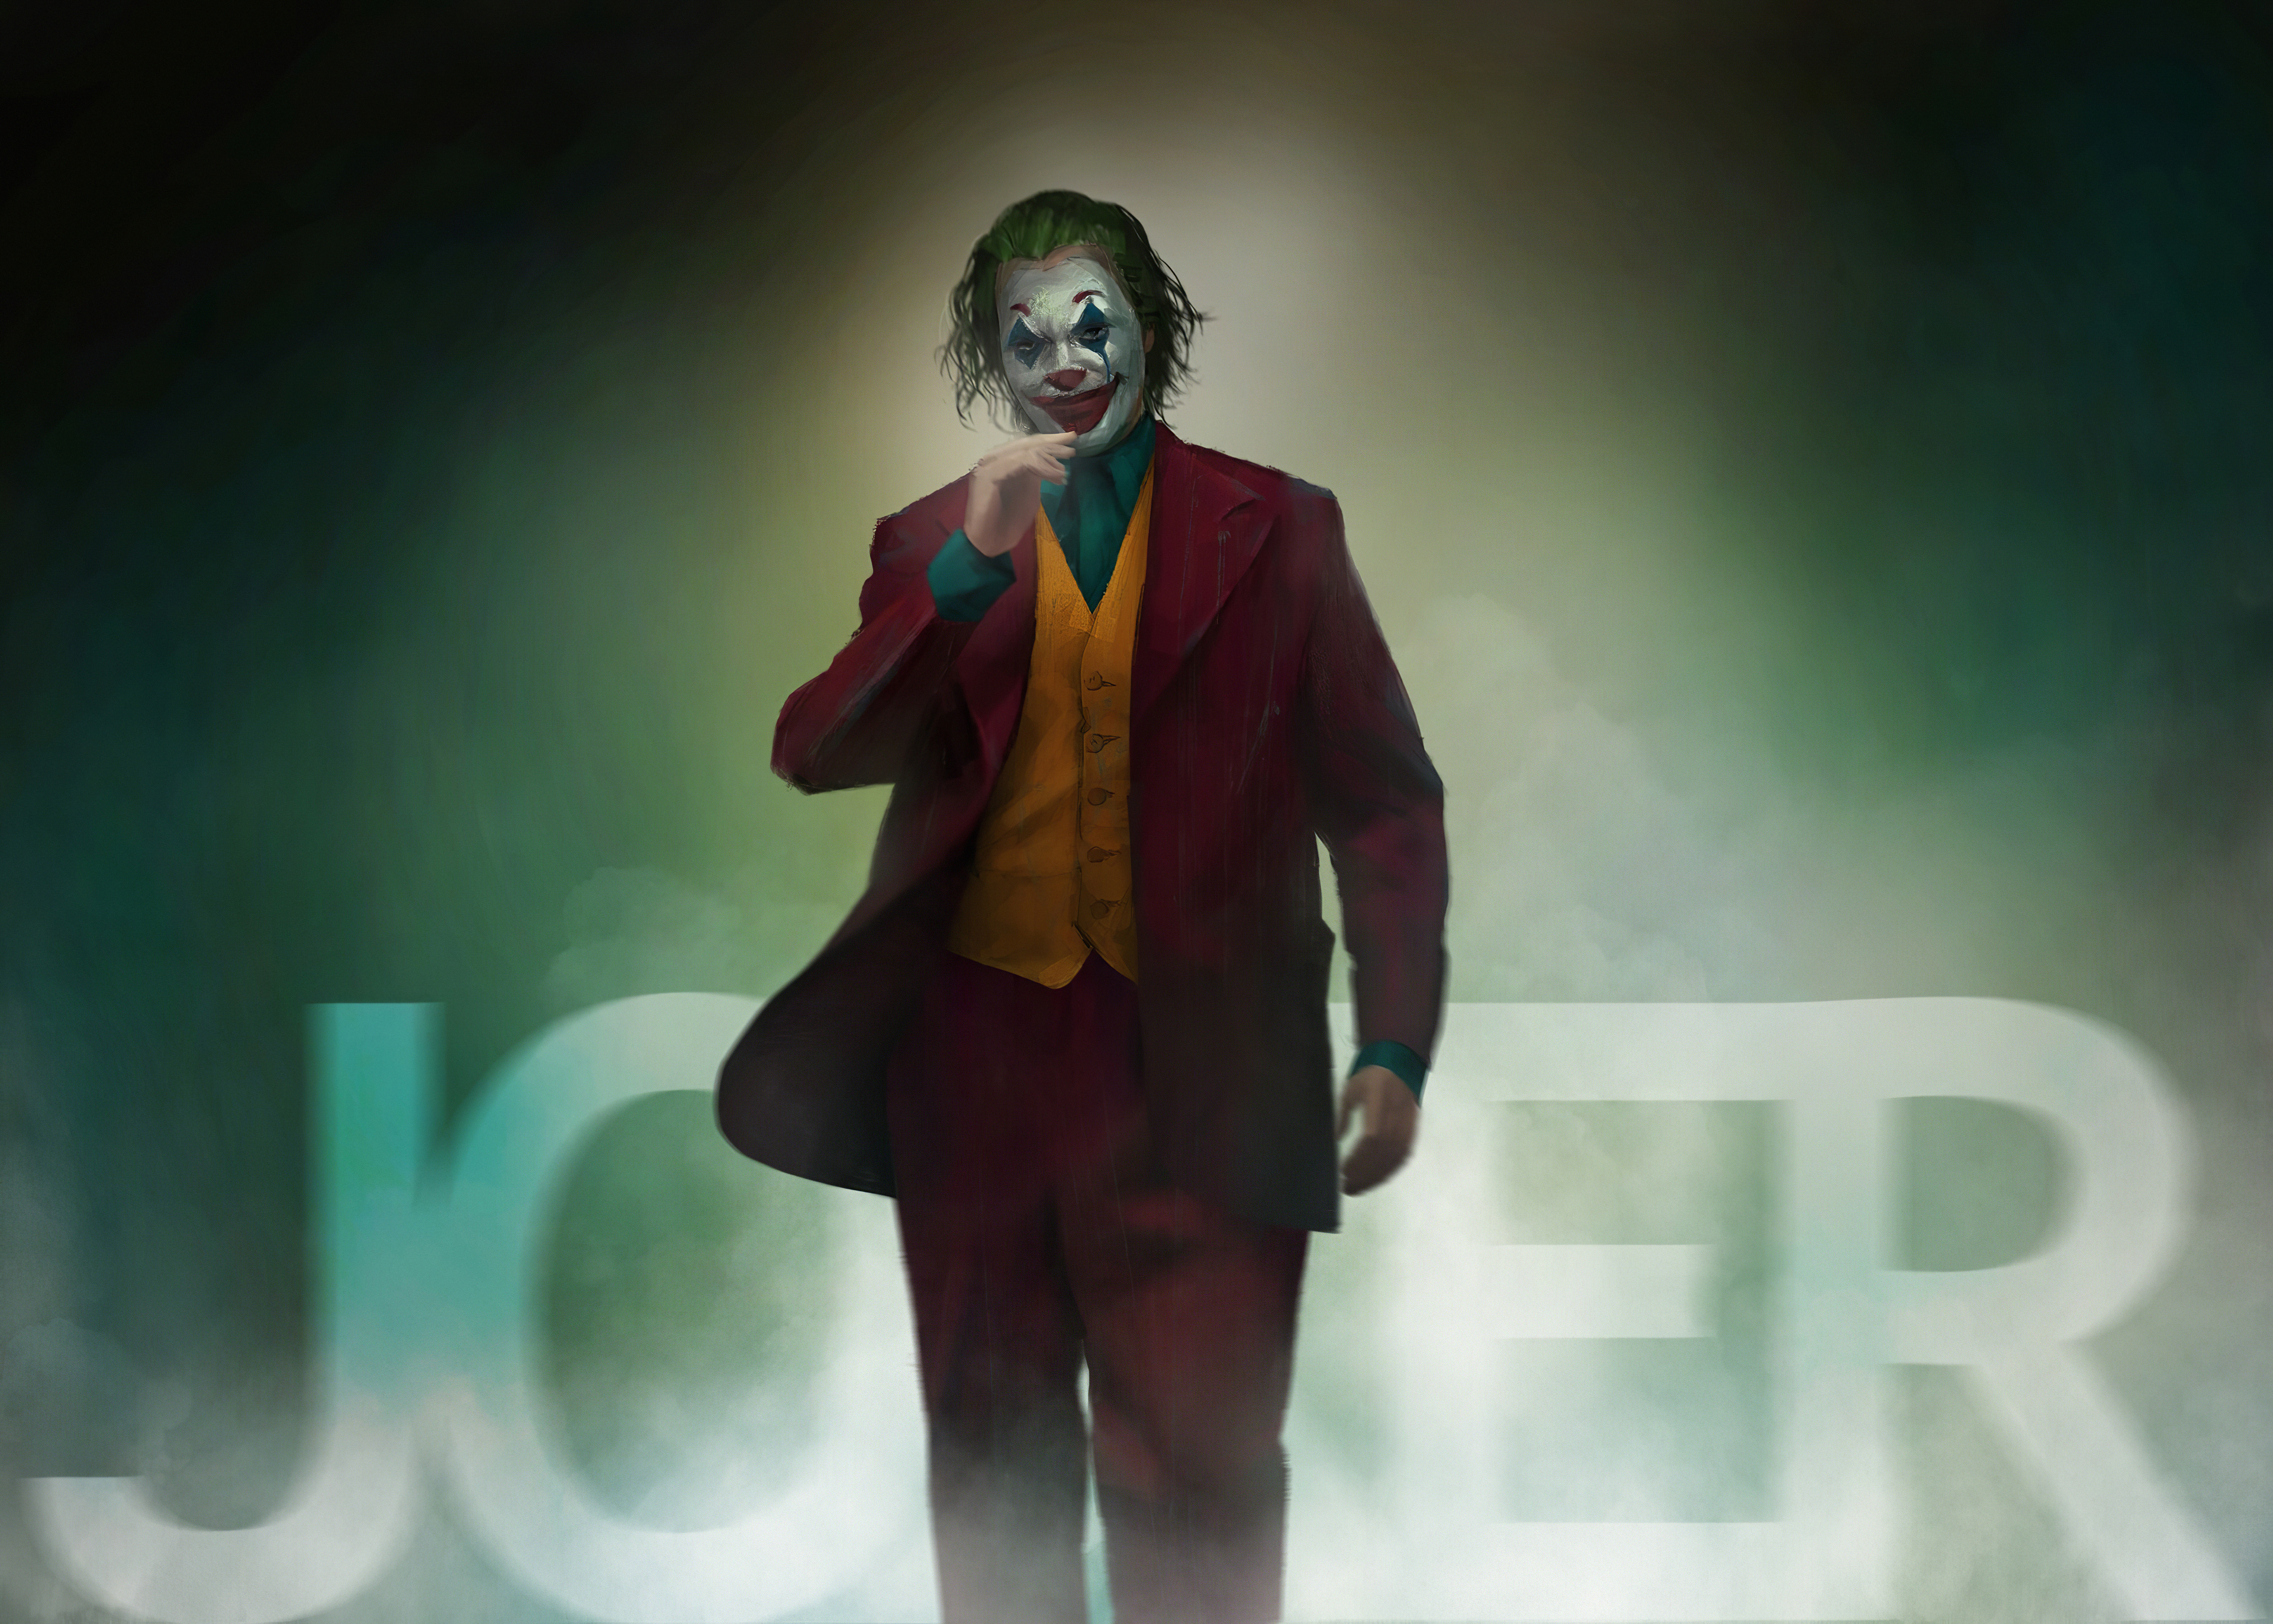 Joker Walking Wallpapers